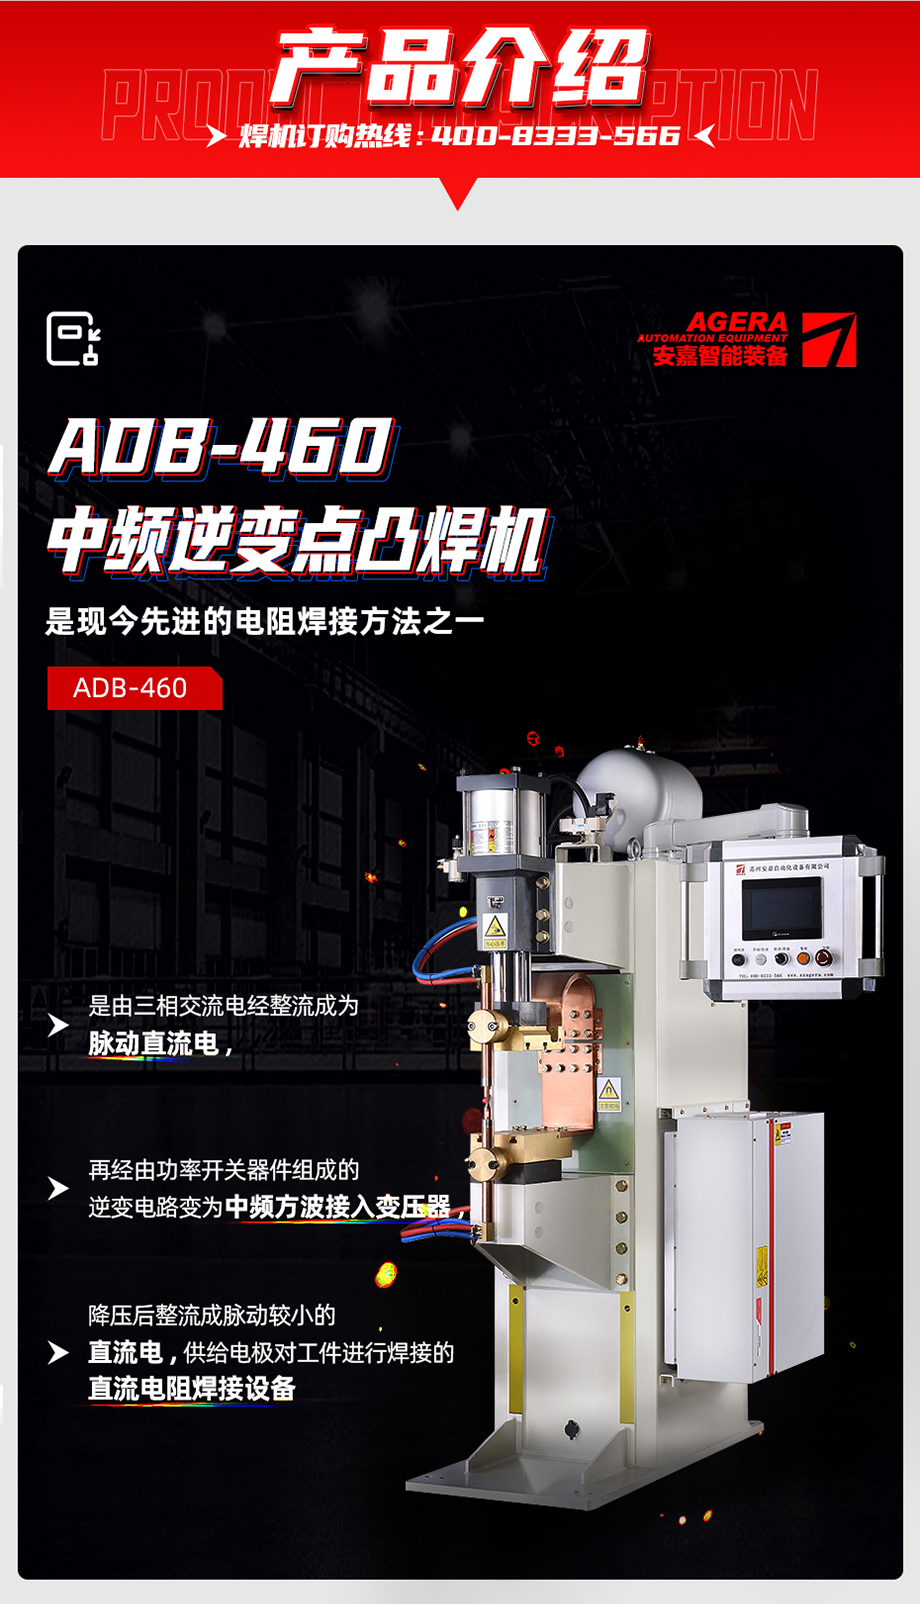 ADB-460中频点焊机产品介绍